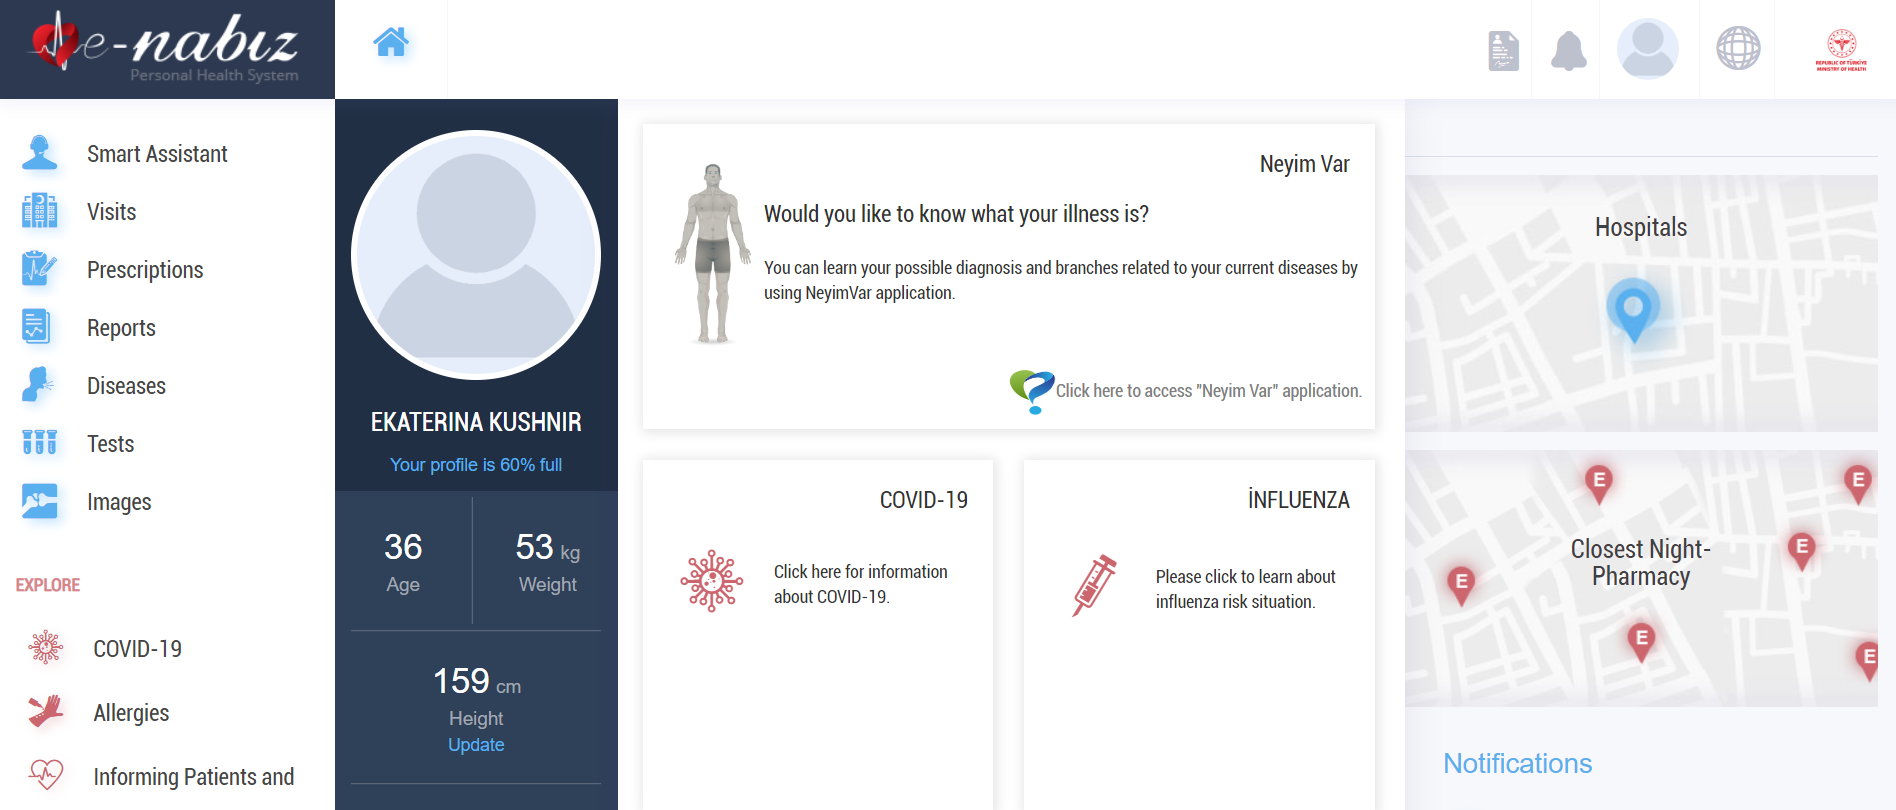 Так выглядит домашняя страница сервиса «Е⁠-⁠набиз». Там вся информация о здоровье, прививках и визитах в клинику